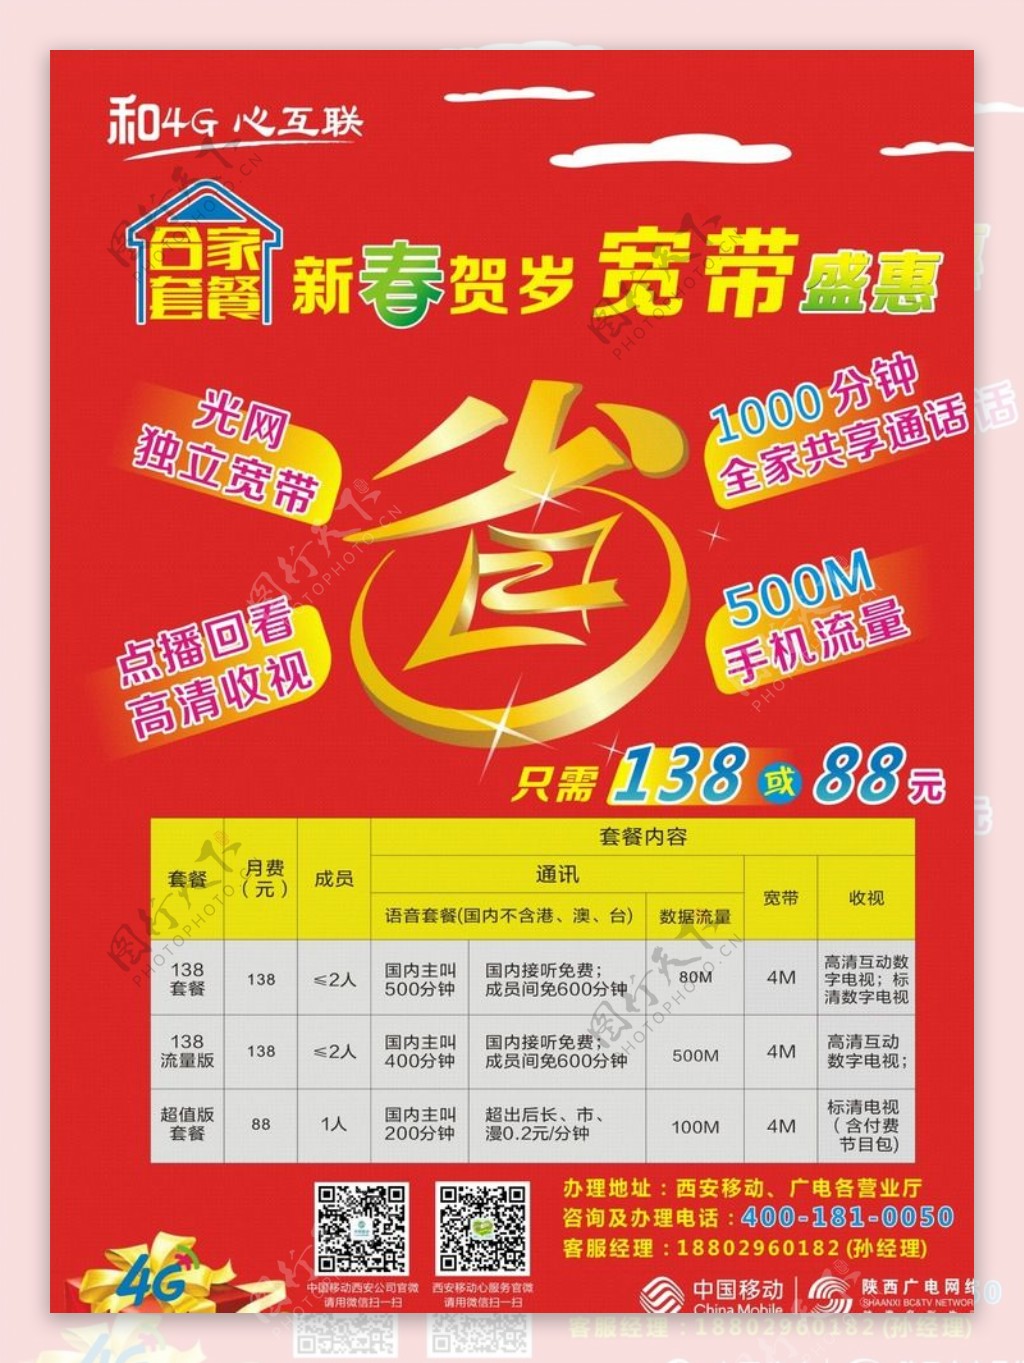 中国移动宽带合家套餐新年海报图片